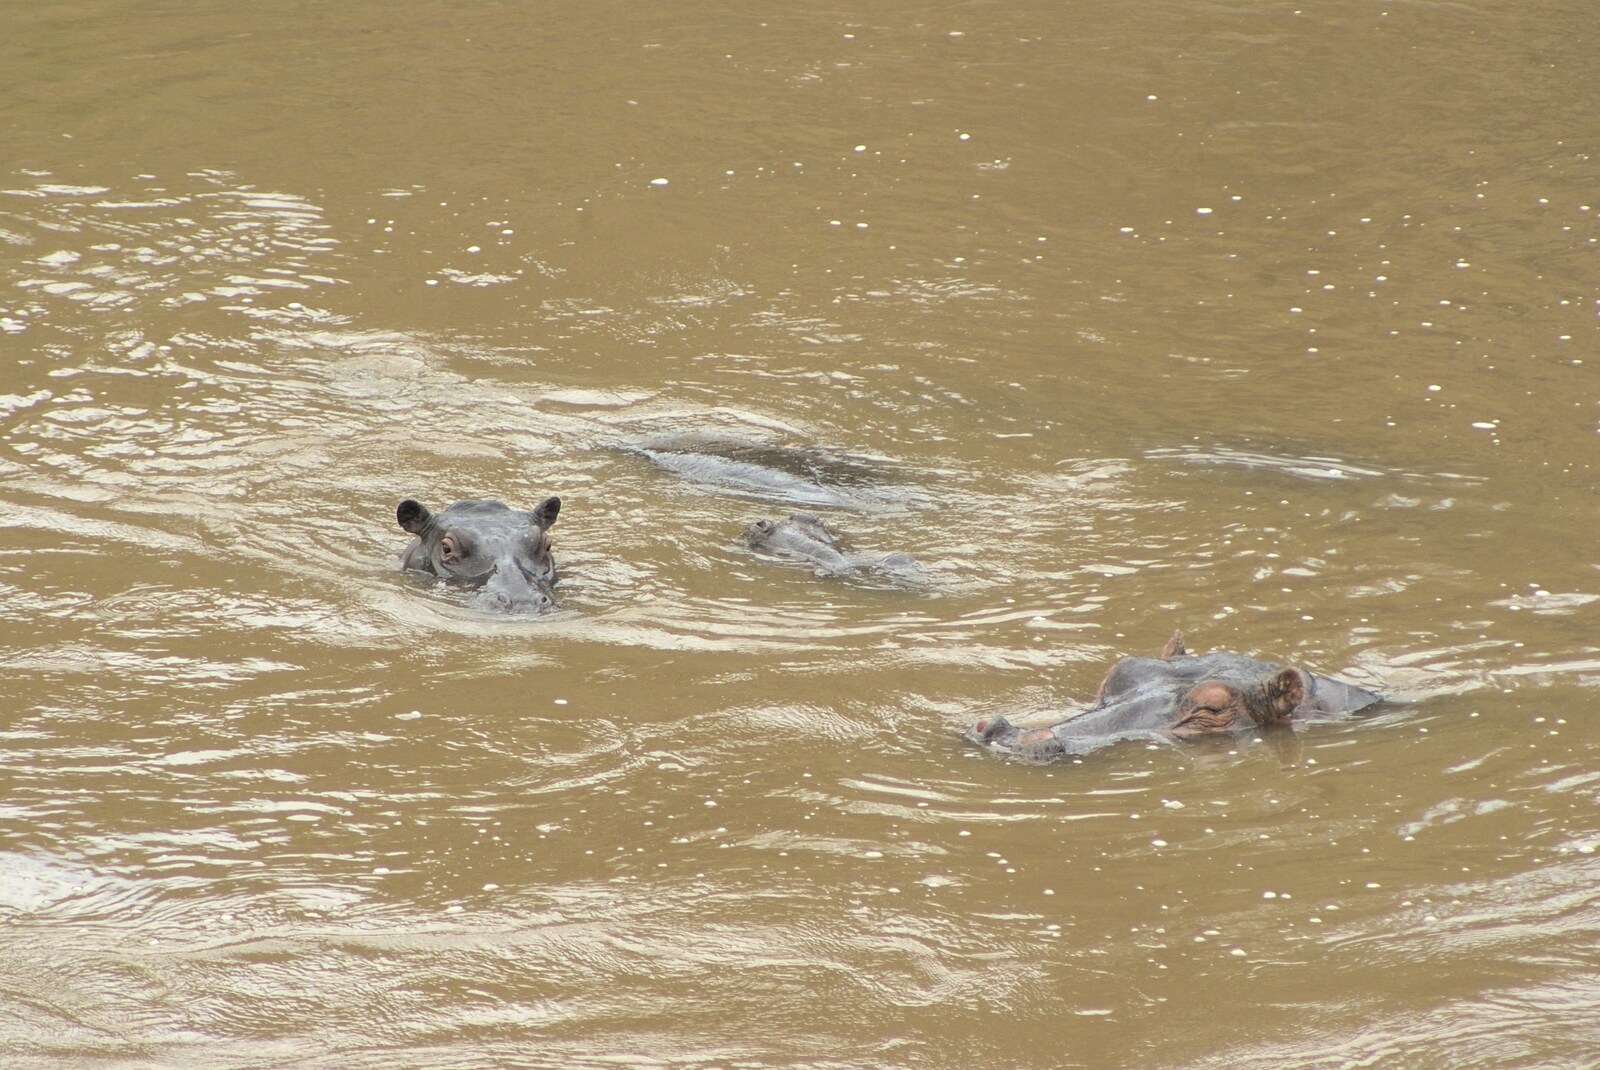 Hippos in the river from Maasai Mara Safari and a Maasai Village, Ololaimutia, Kenya - 5th November 2010